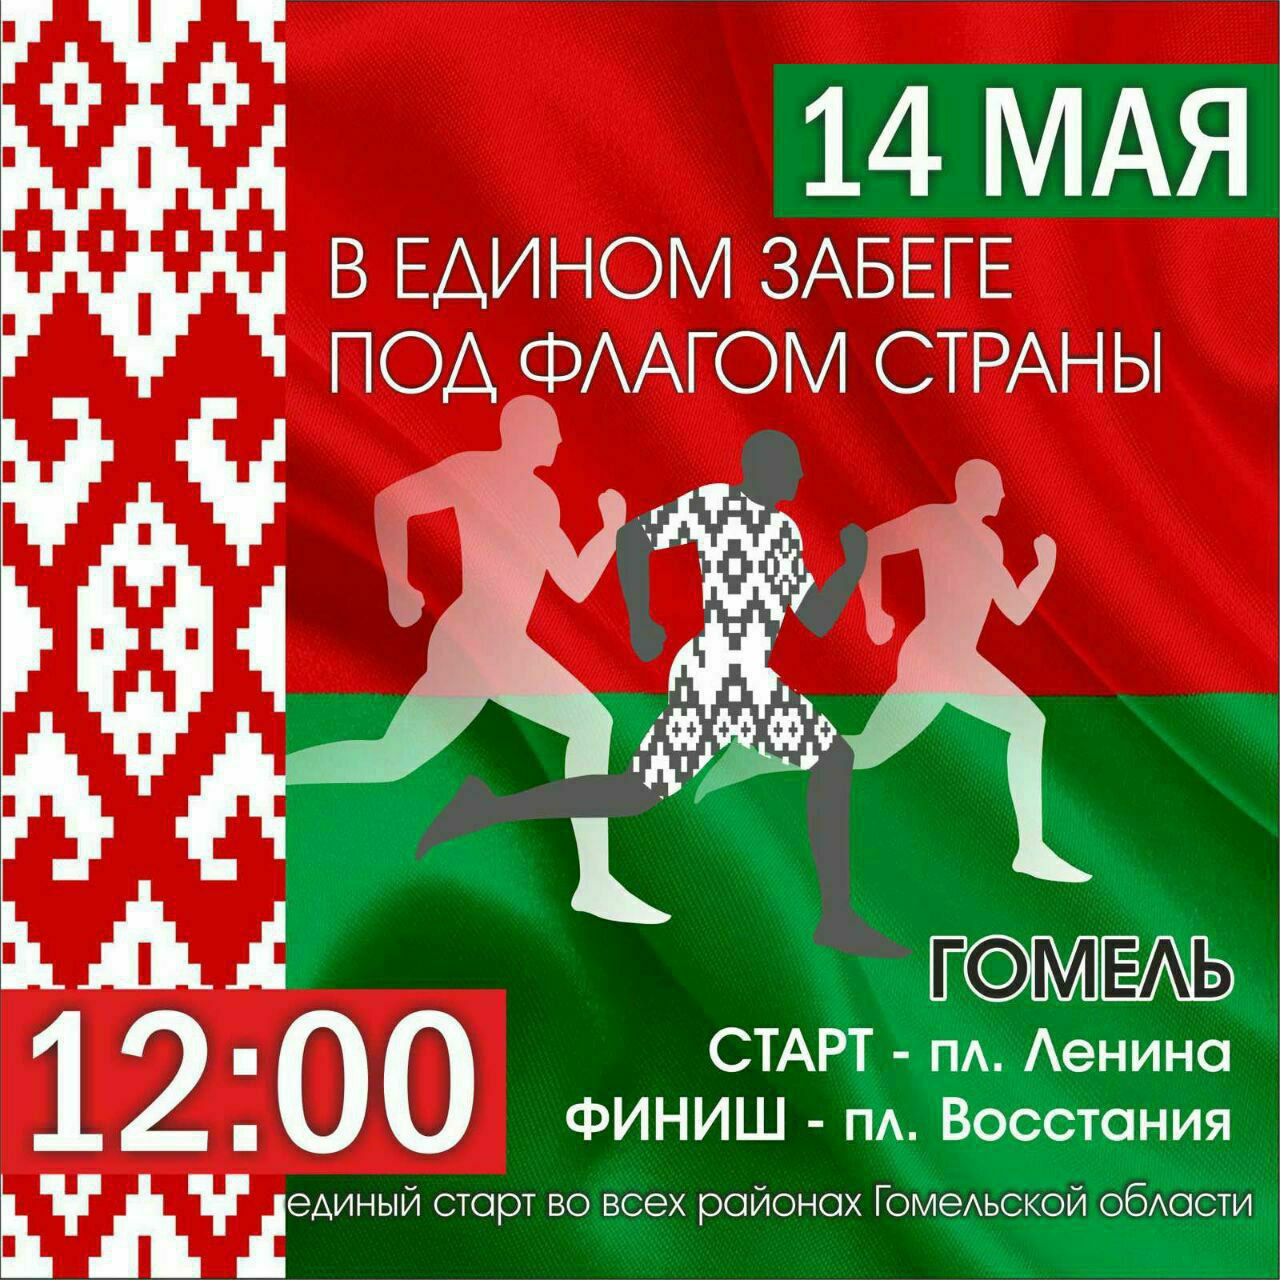 В Гомеле 14 мая пройдет спортивно-массовое мероприятие «В едином забеге под флагом страны»